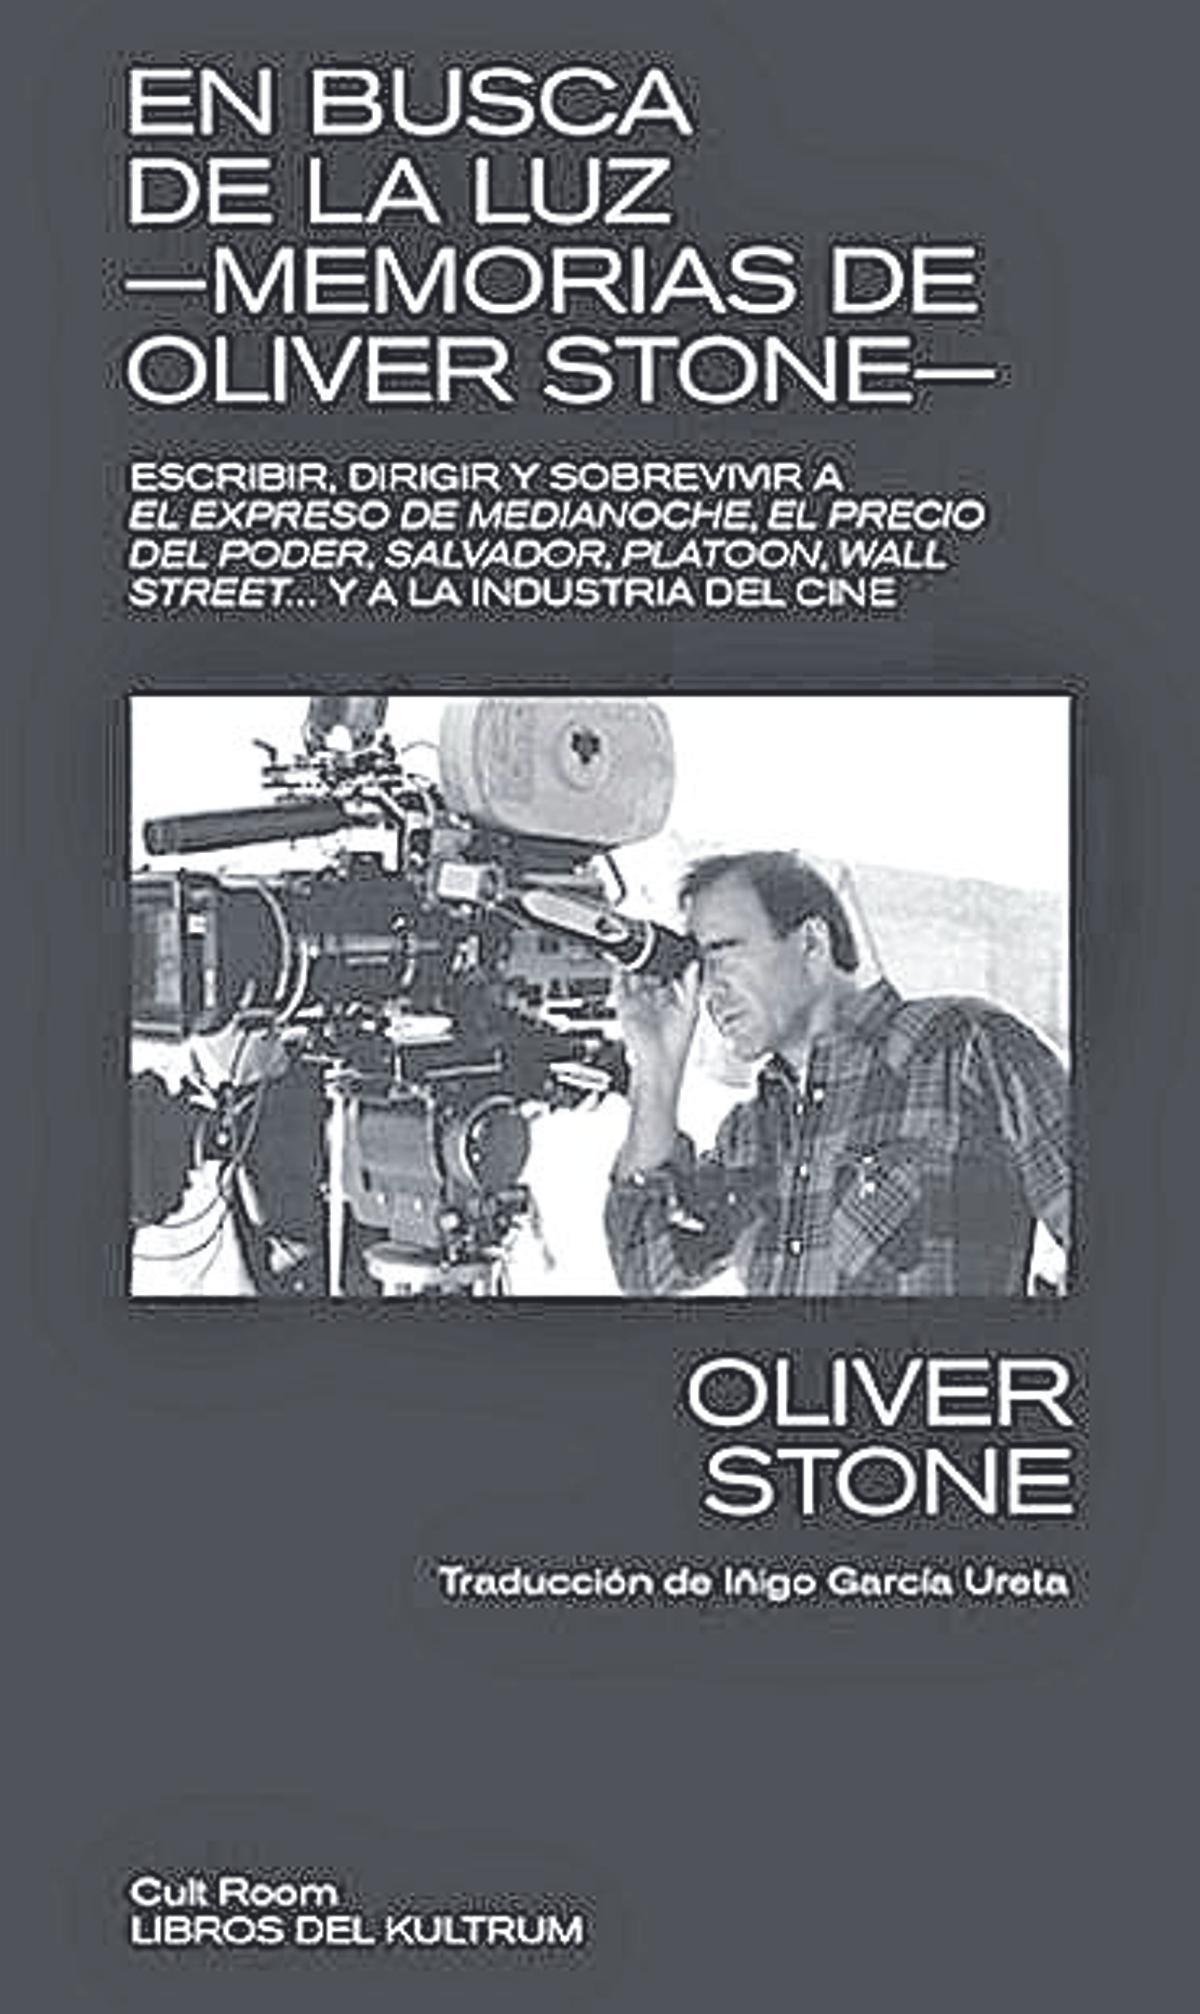 Oliver Stone  En busca de la luz   Libros del Kultrum   480 páginas / 24 euros